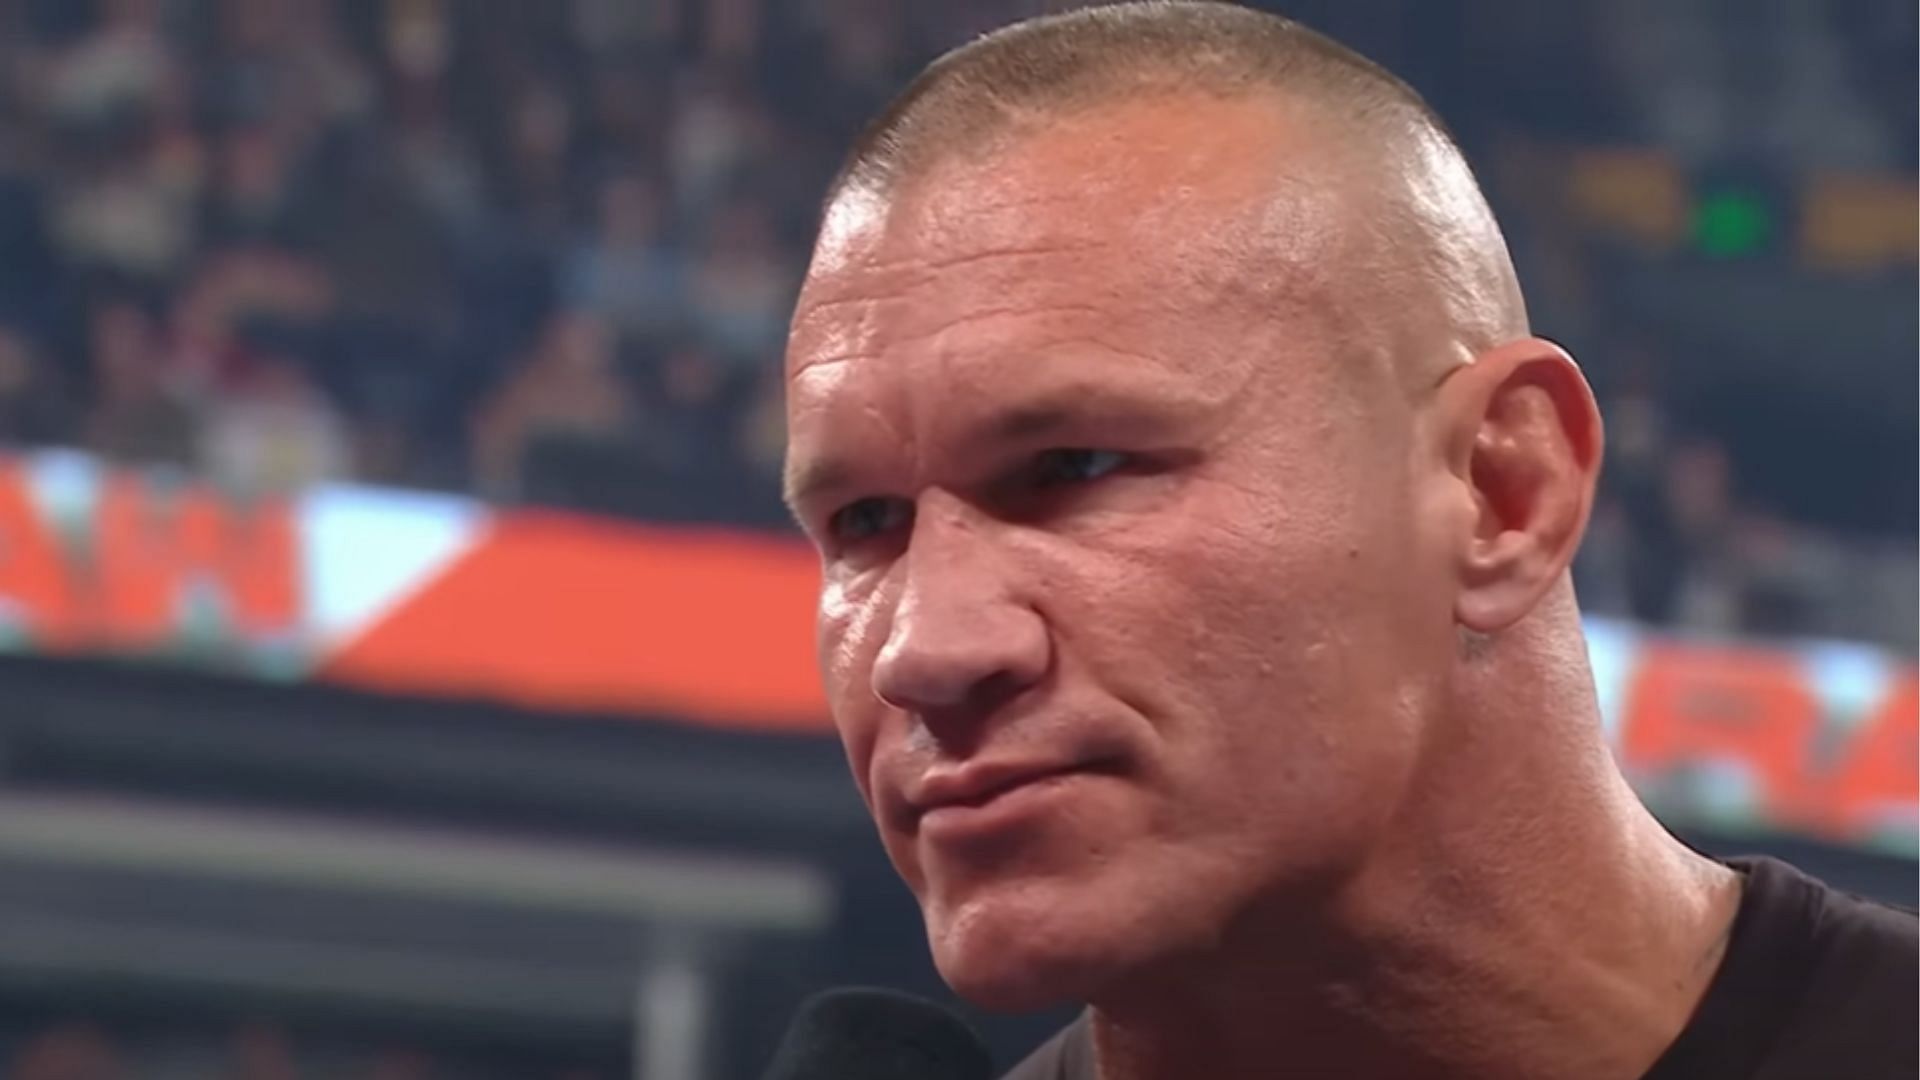 Randy Orton debuted on WWE